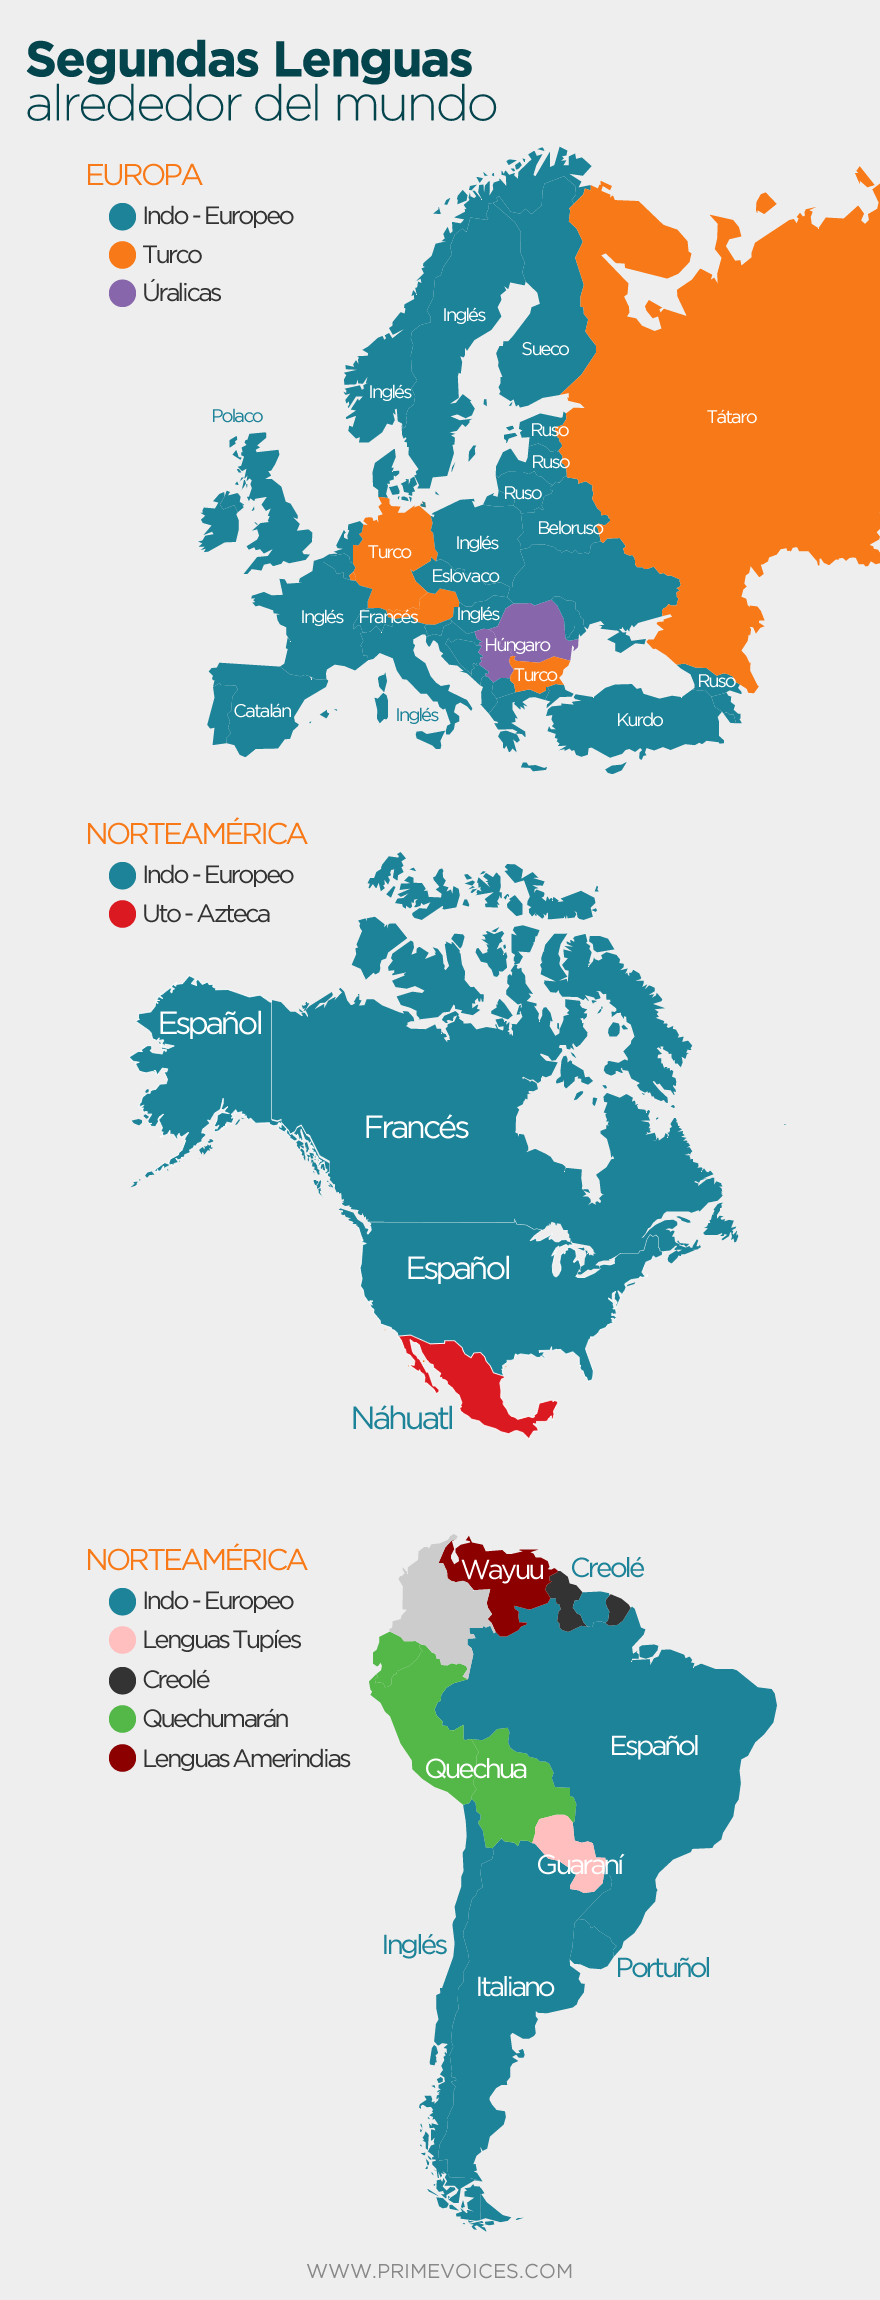 Segundas lenguas alrededor del mundo